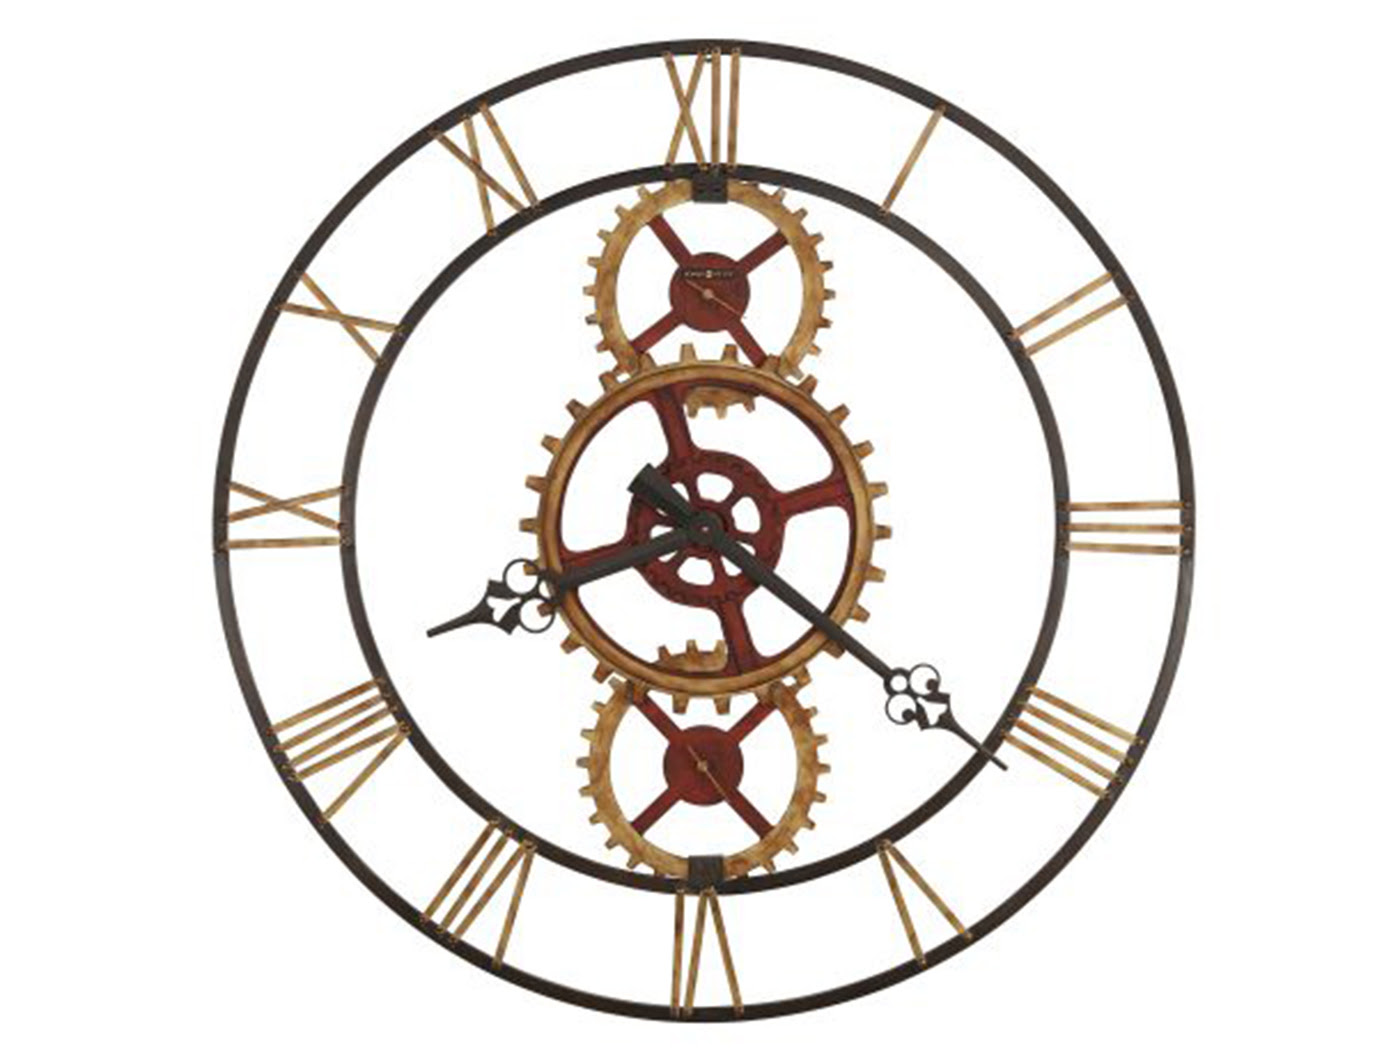 howard miller clock repair manual